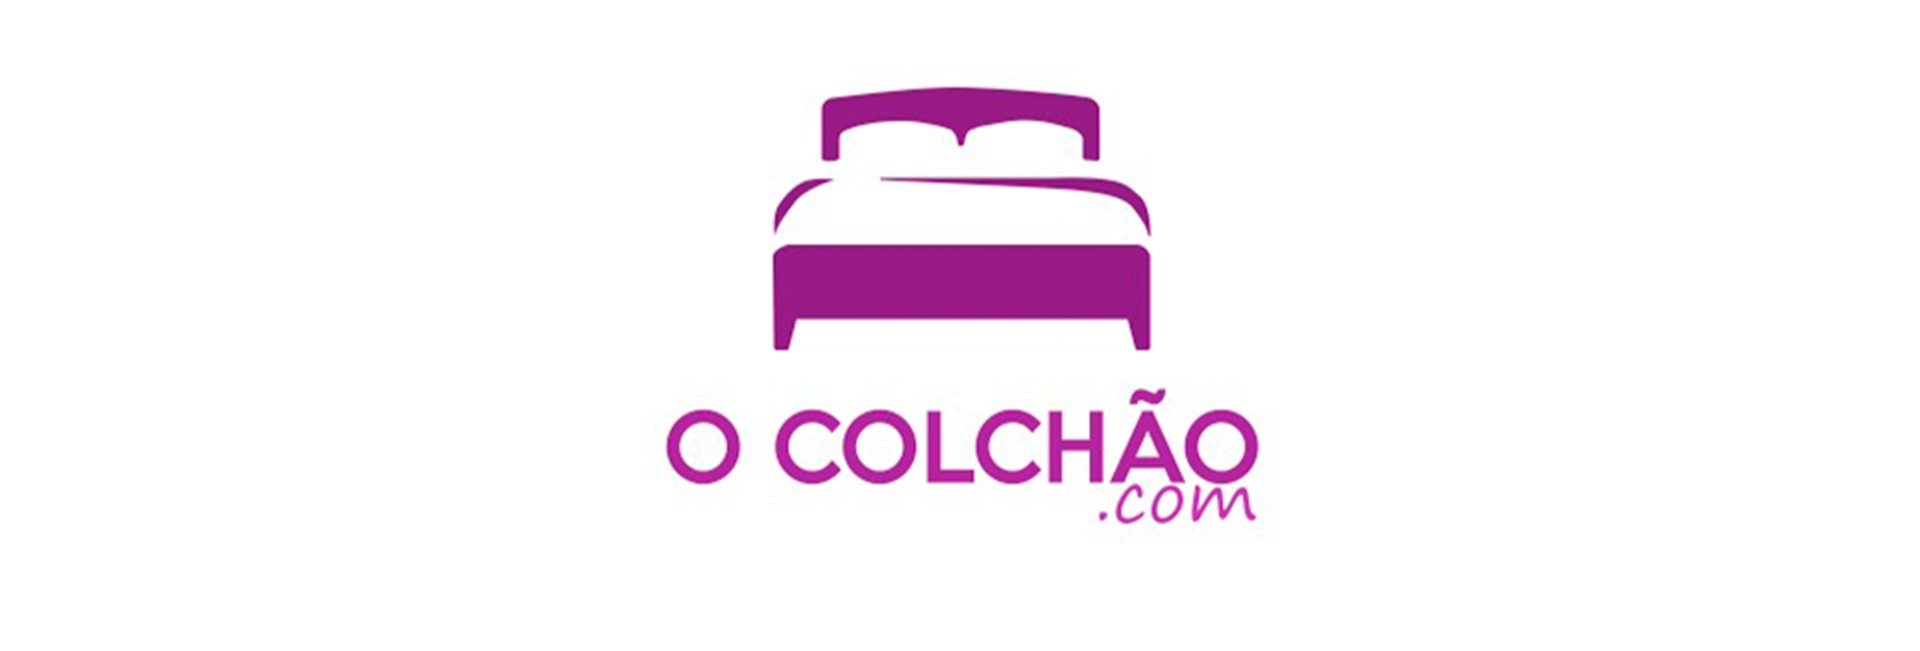 Lojas-O-colchao